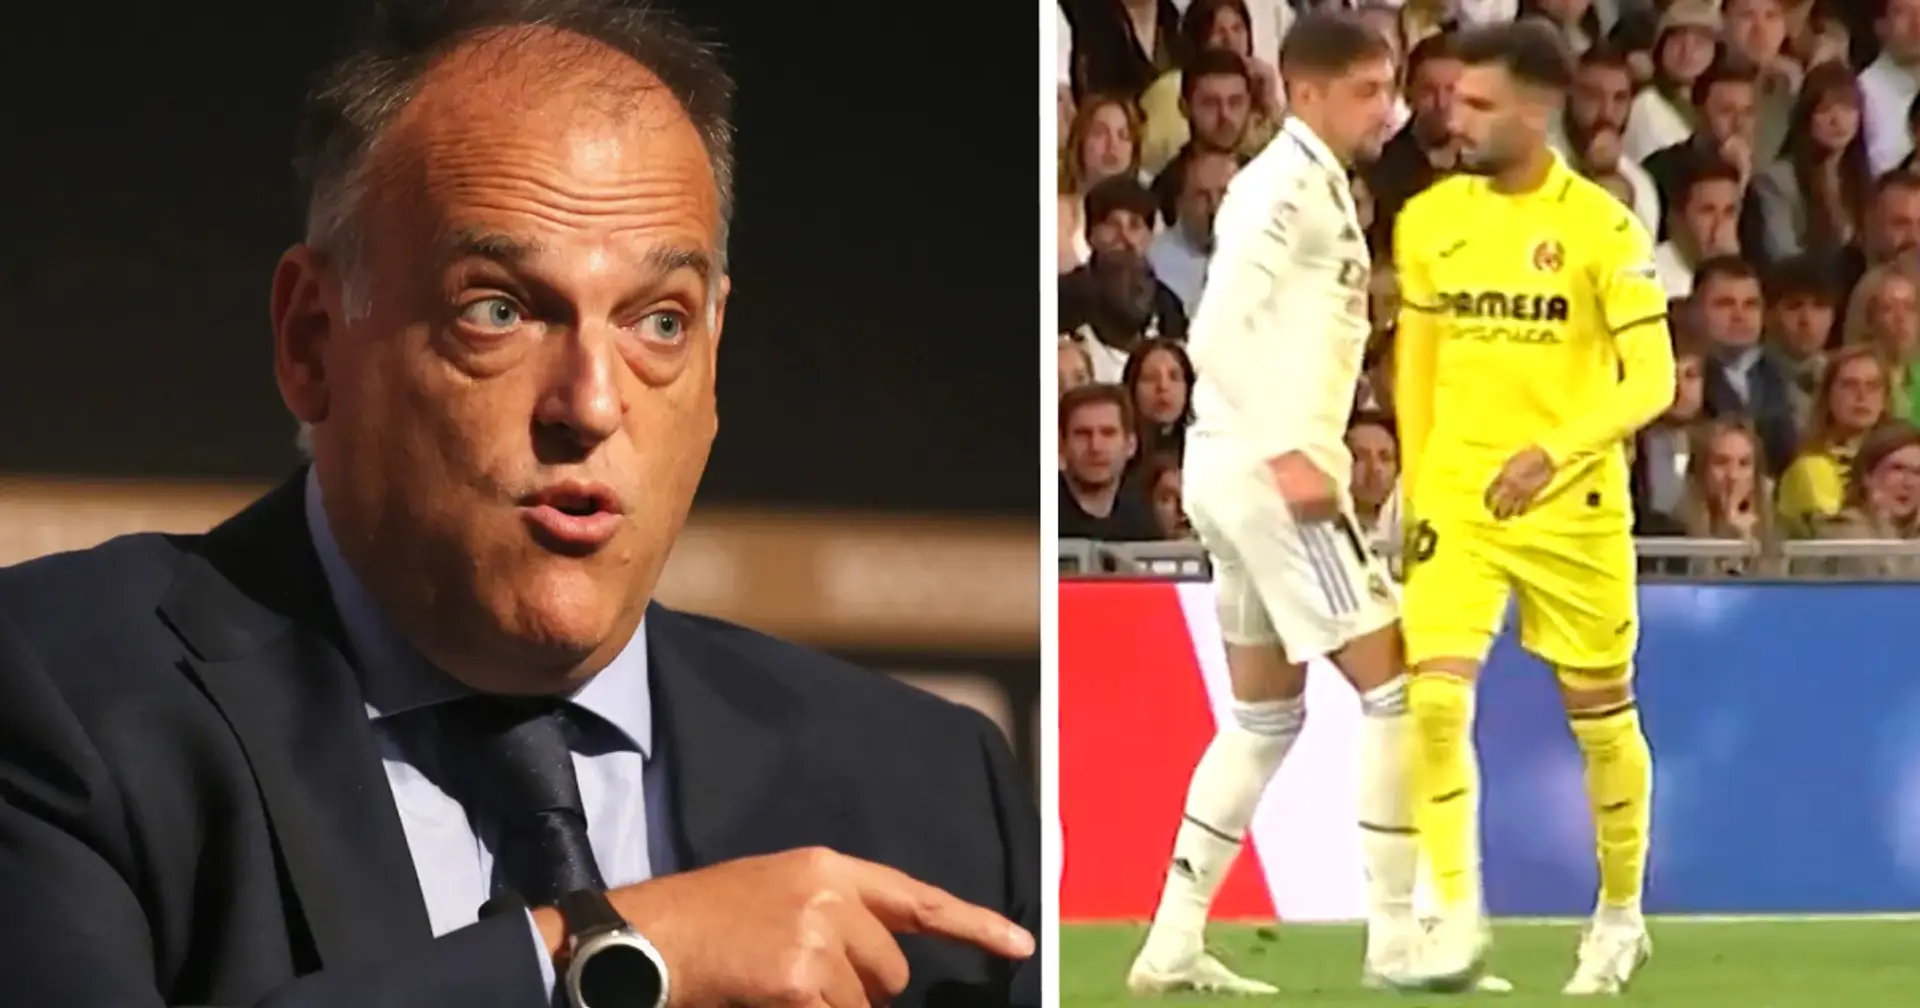 La Liga-Präsident Tebas reagiert auf Valverdes "Schlag" gegen Baena